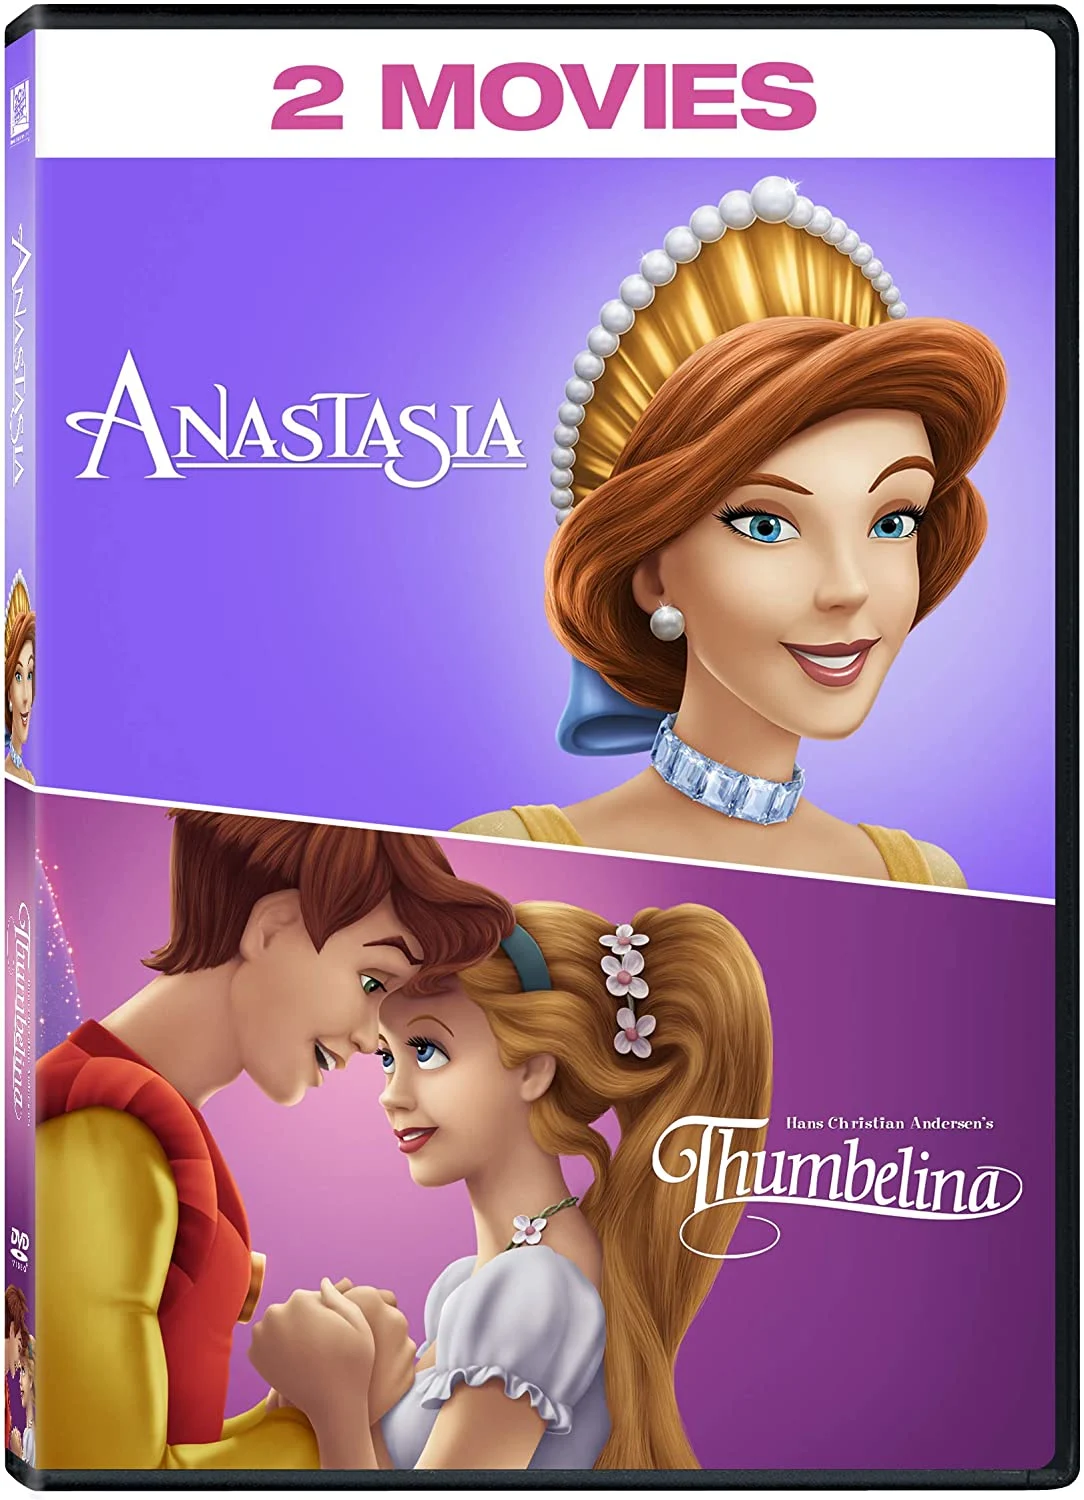 Anastasia / Thumbelina (DVD) on MovieShack